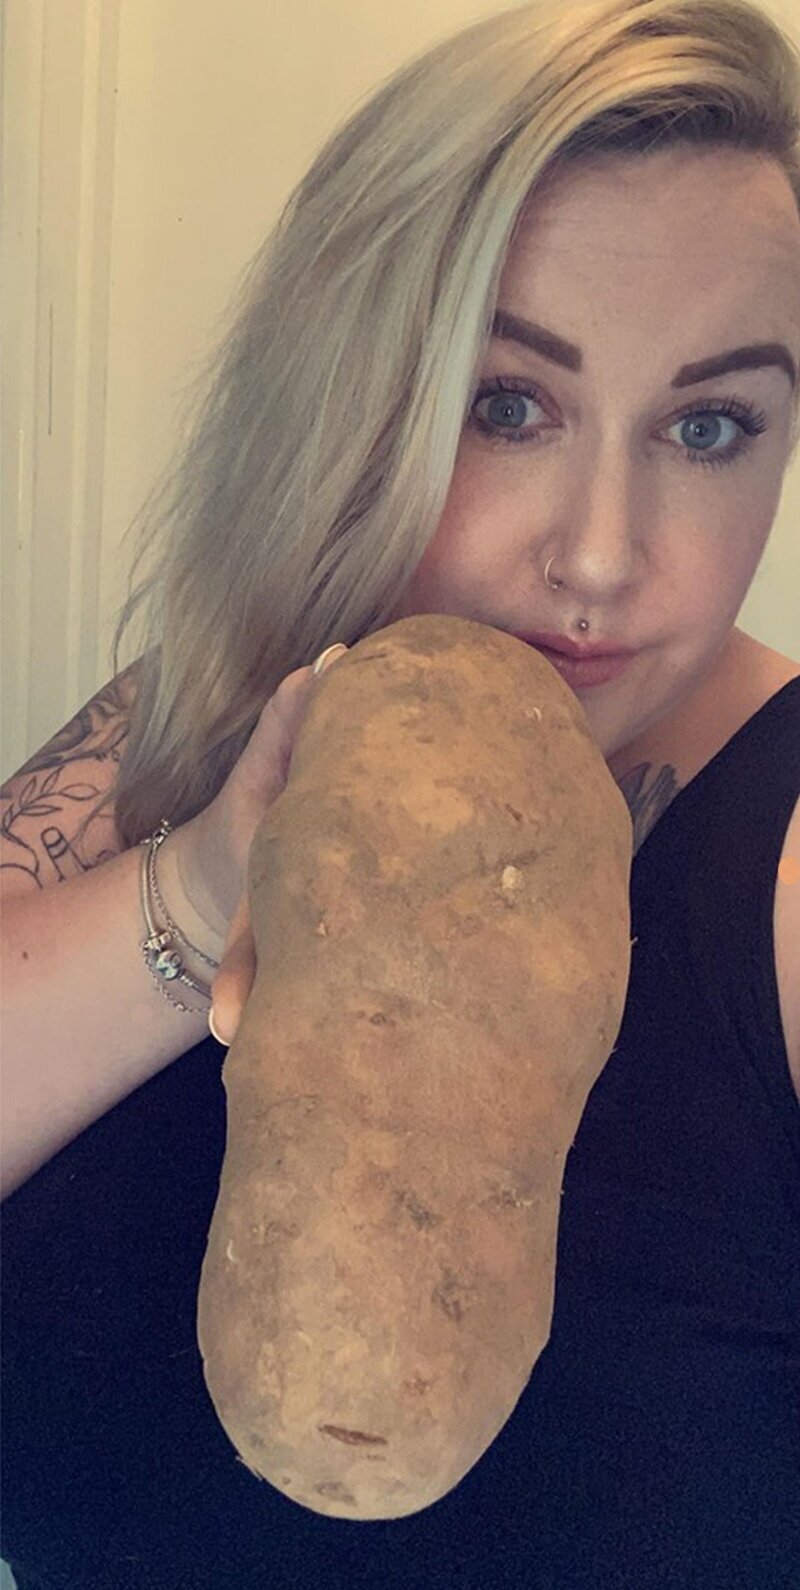 Женщина купила картофель, который оказался больше её собственной головы